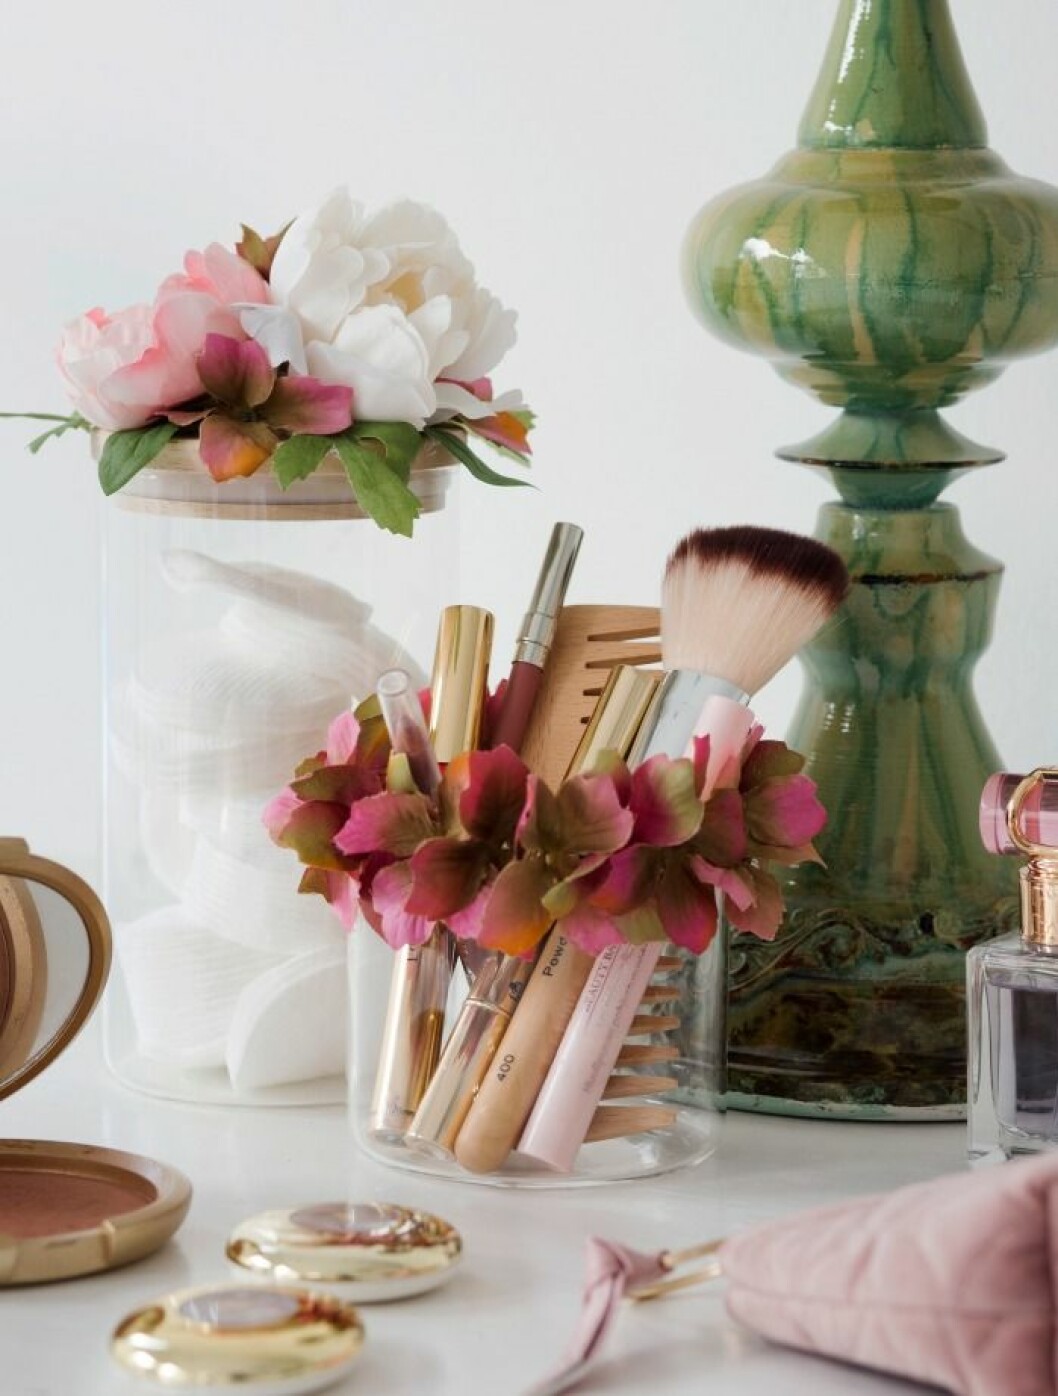 Matcha din sminkspegel med blomsterprydda burkar. 